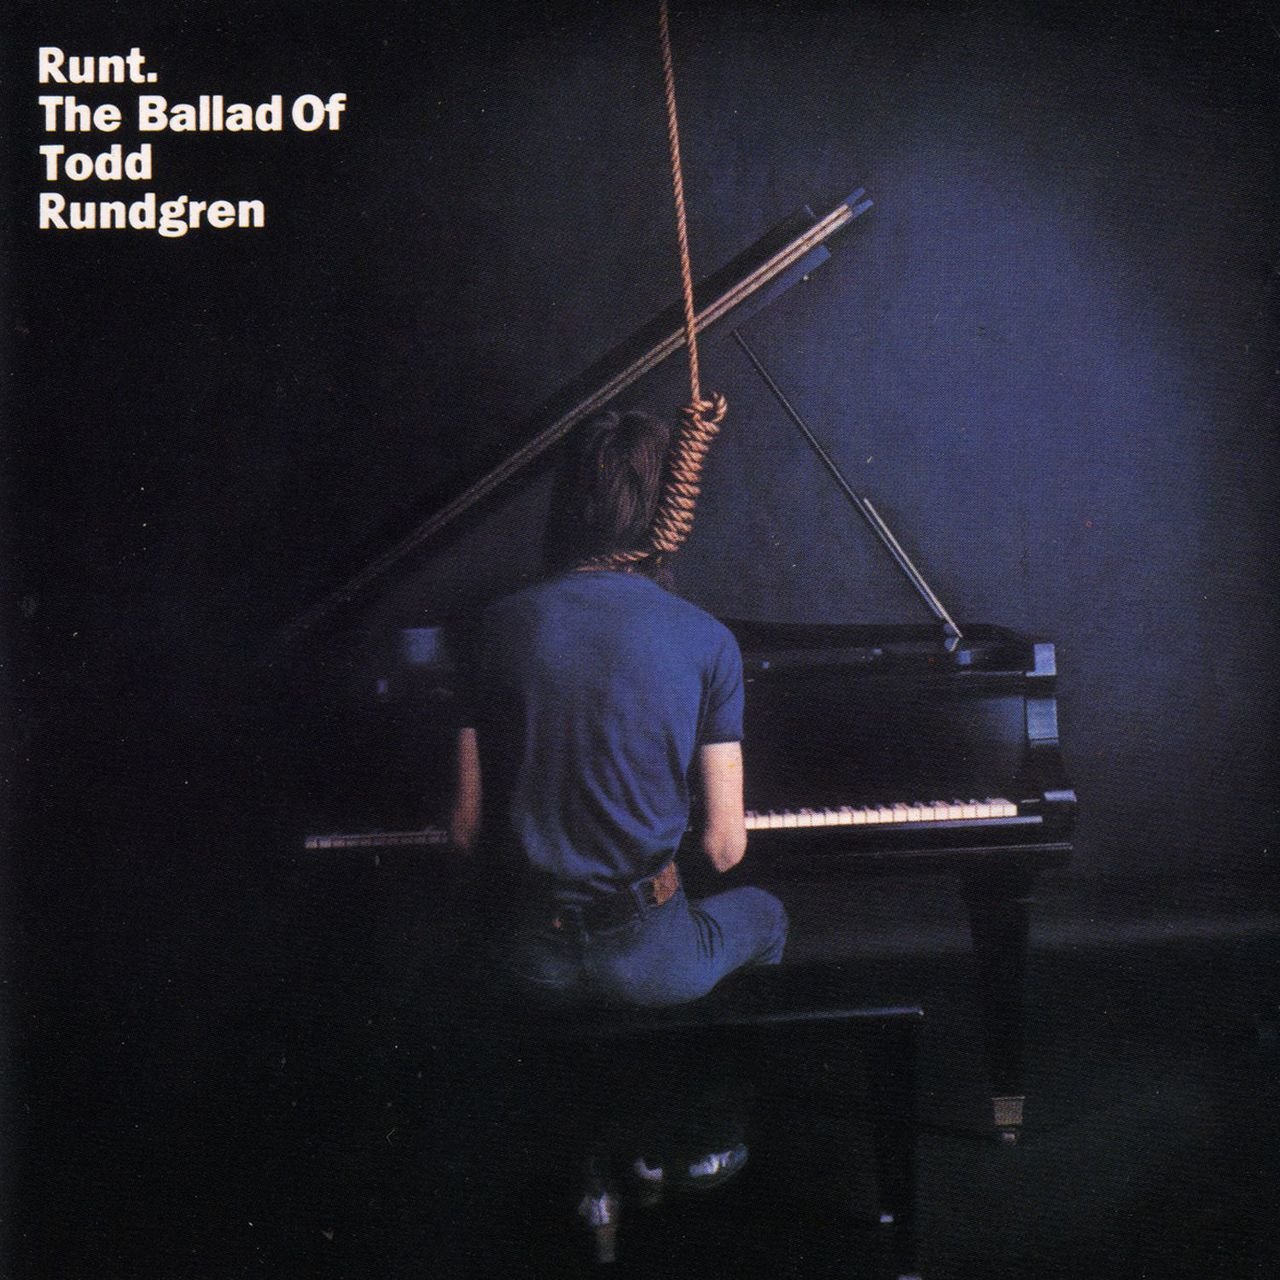 Runt. The Ballad of Todd Rundgren Review